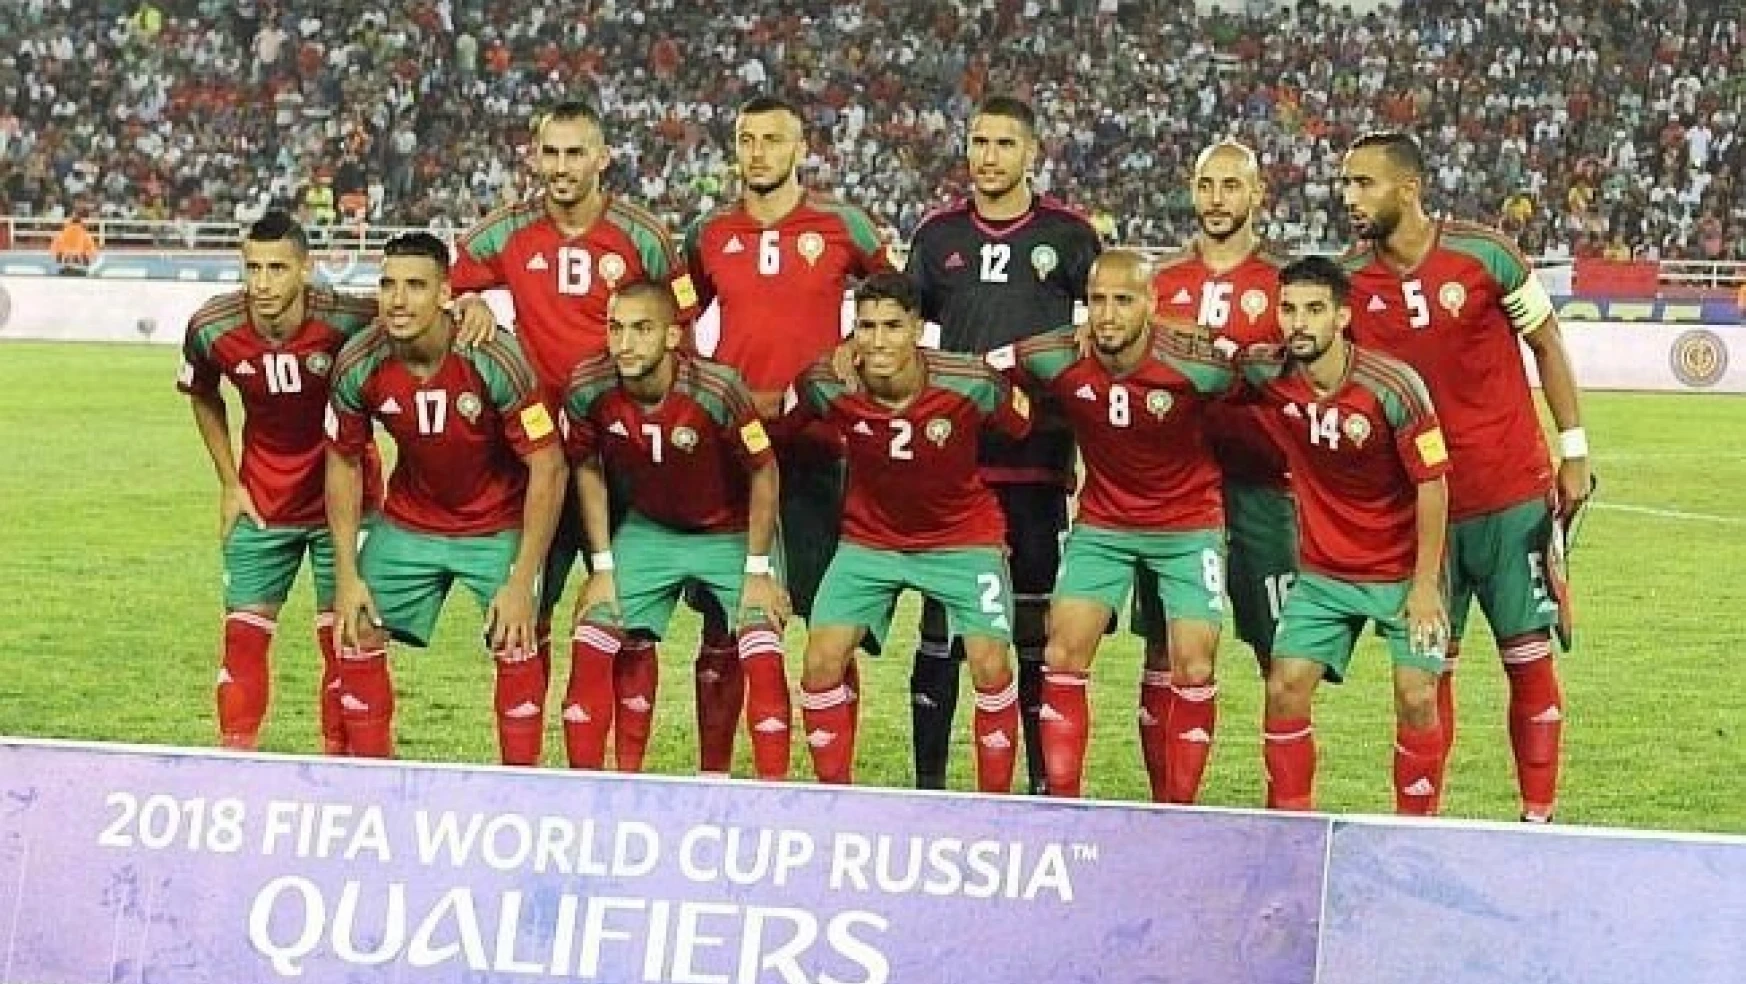 Evkur Yeni Malatyasporlu Khalid ve Sadio milli takımlarının gözdesi
